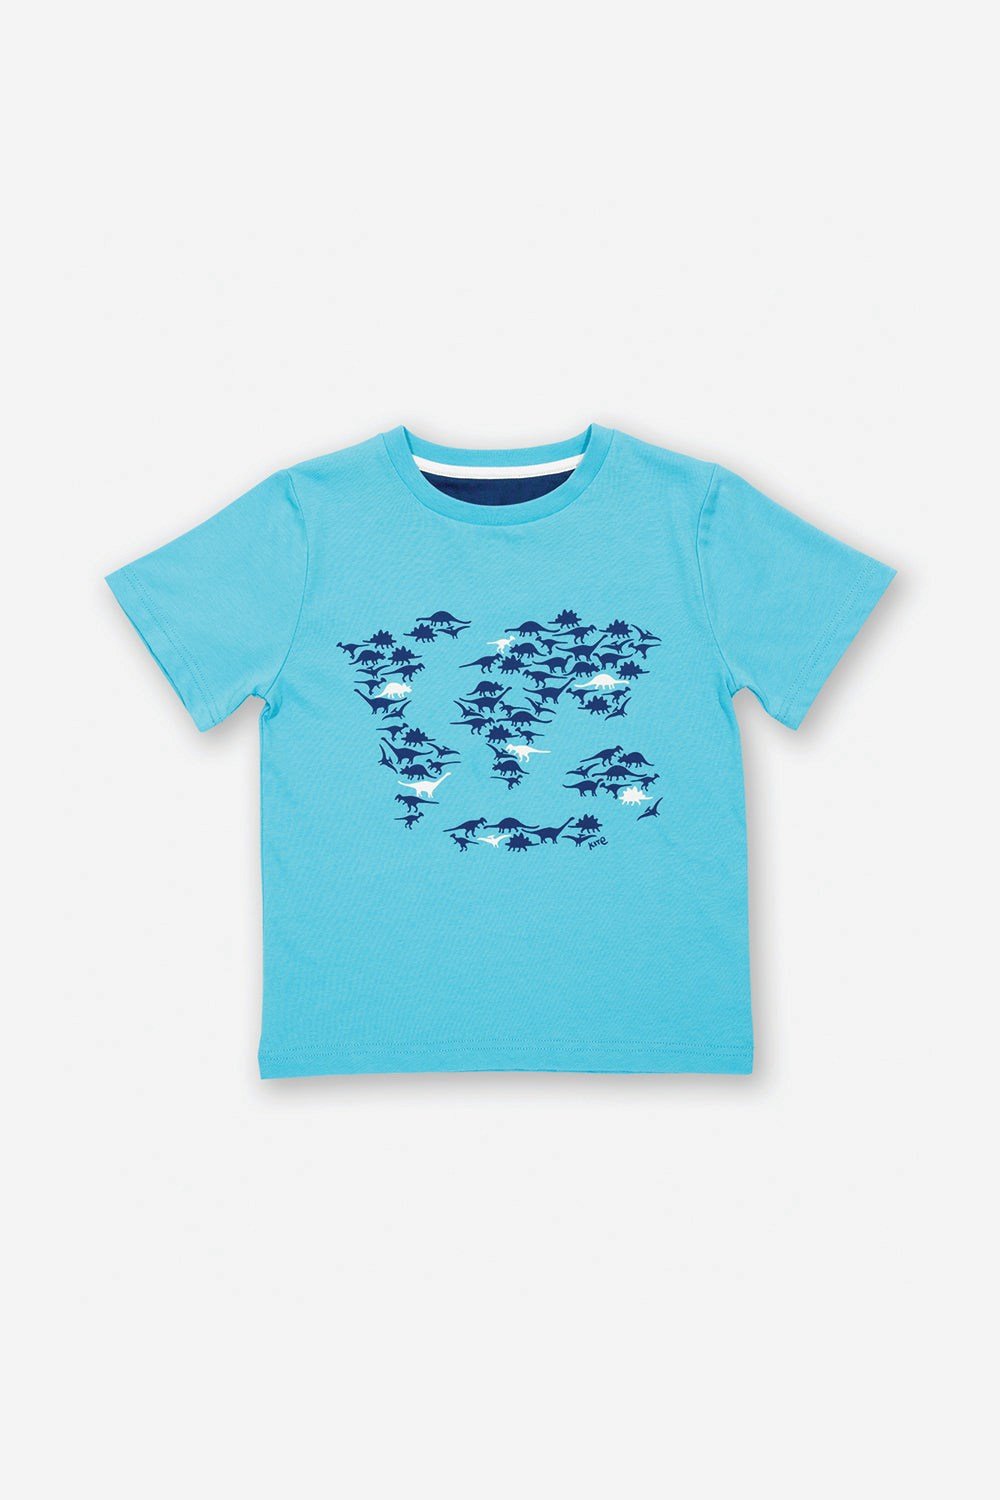 Dino World Kids T-Shirt -